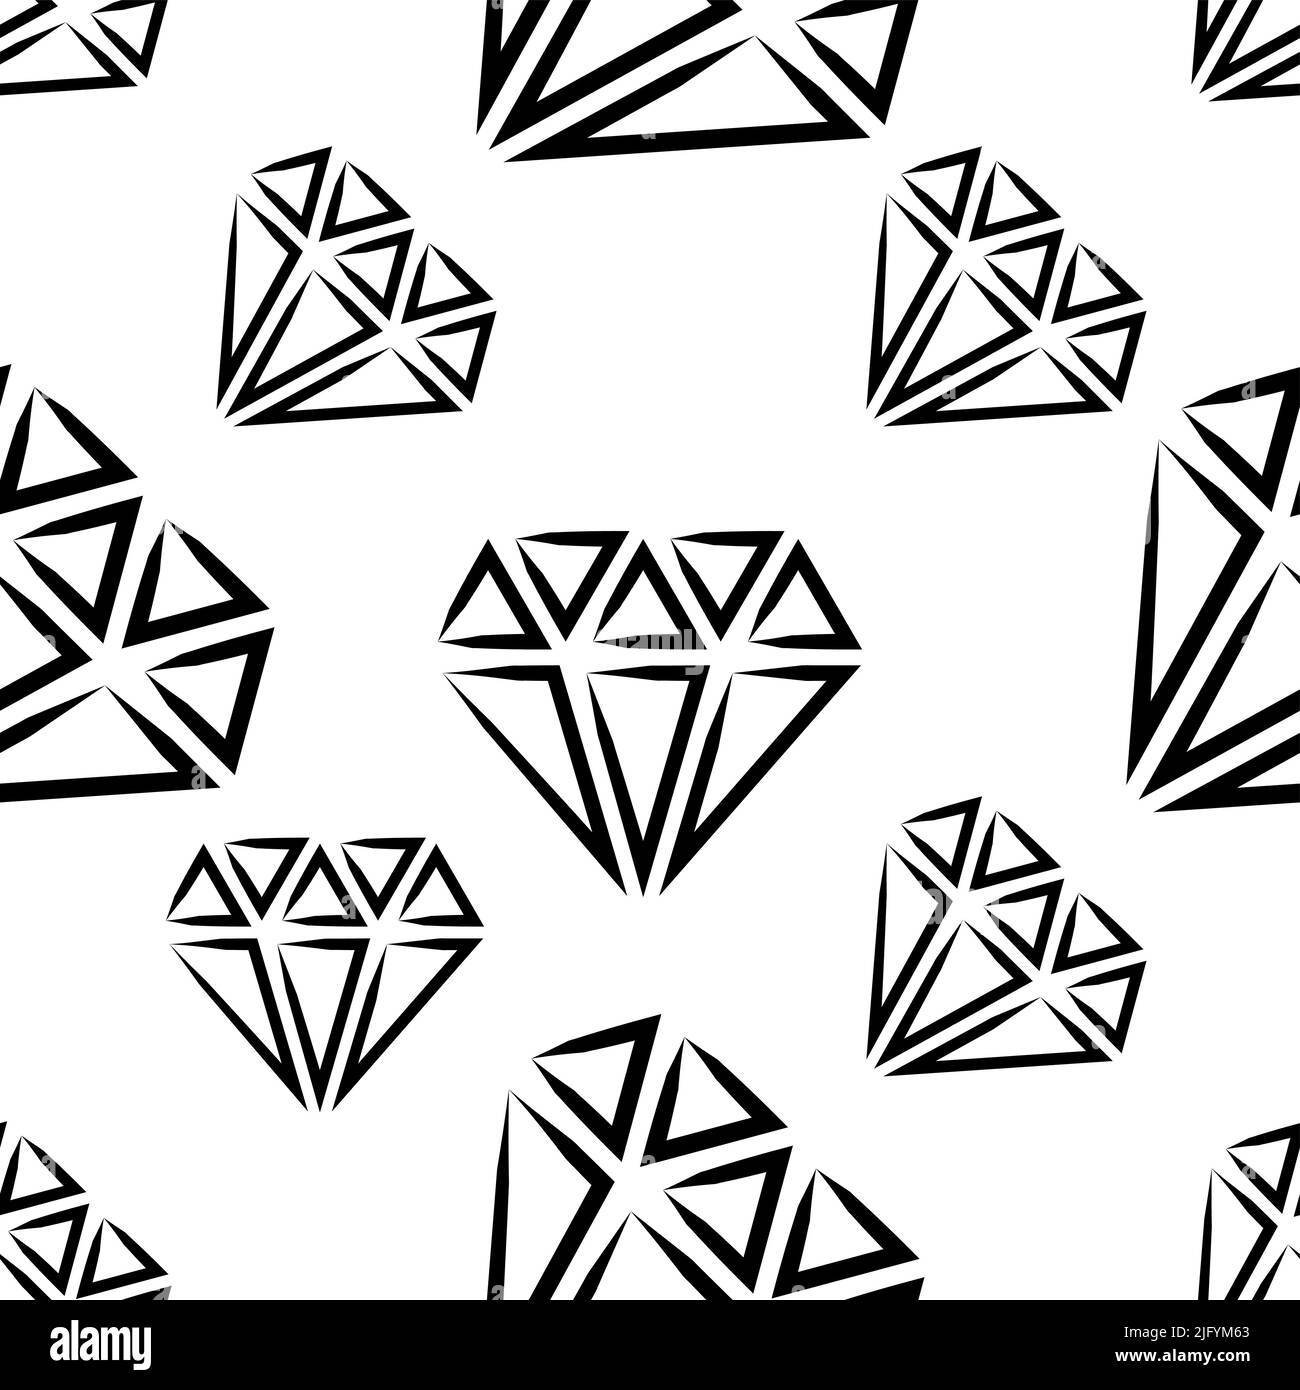 Icona Diamante, disegno grafico del disegno senza giunture del disegno di taglio del diamante Illustrazione Vettoriale